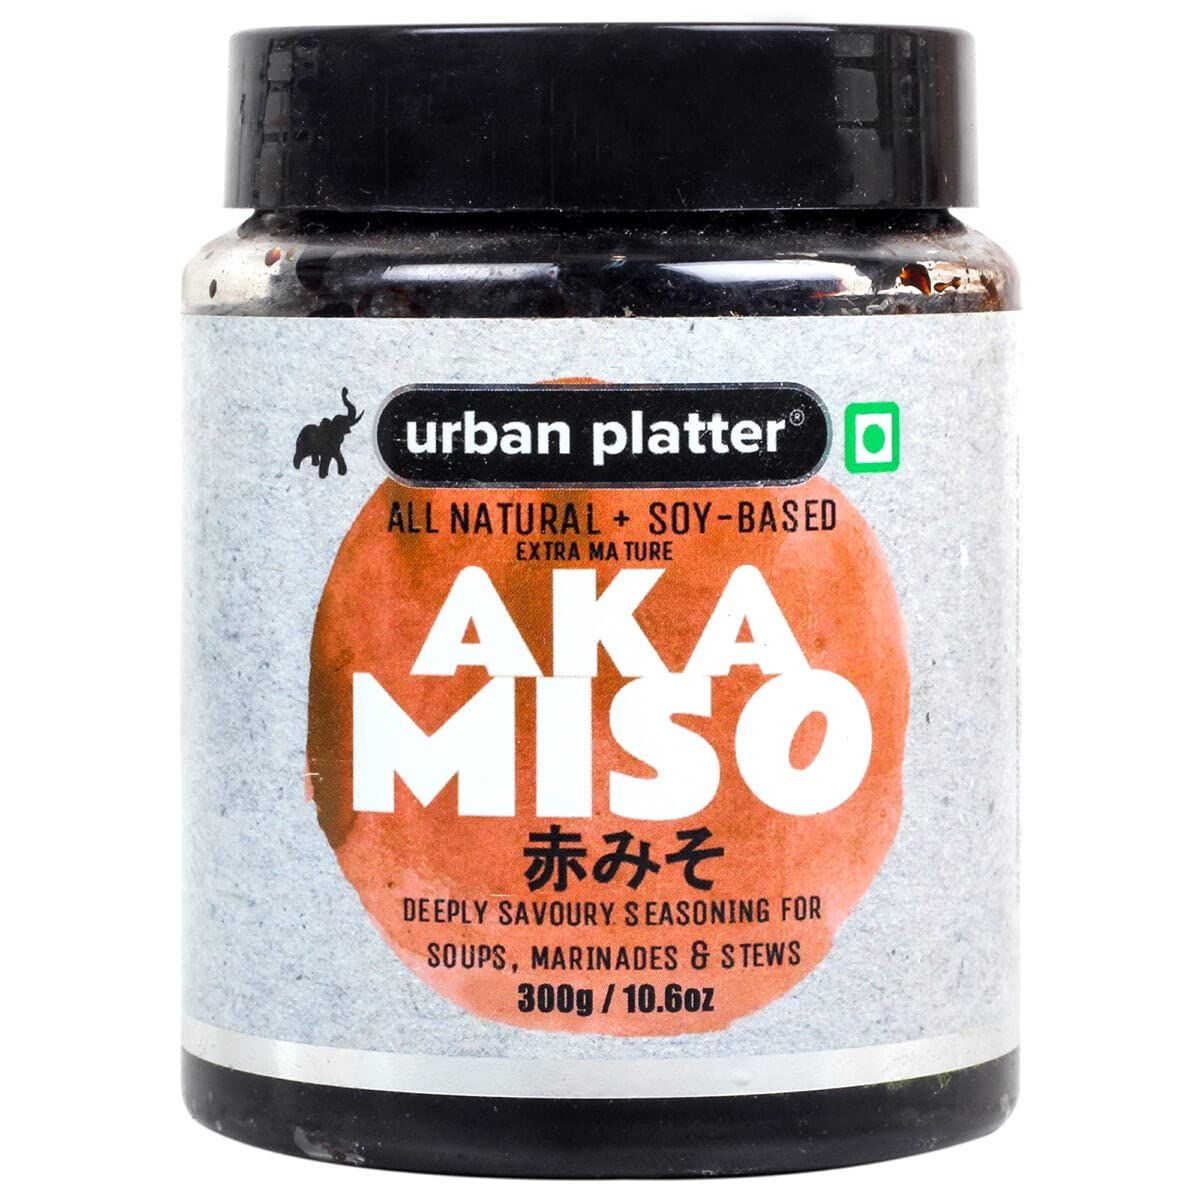 Urban Platter Aka Miso Paste Image